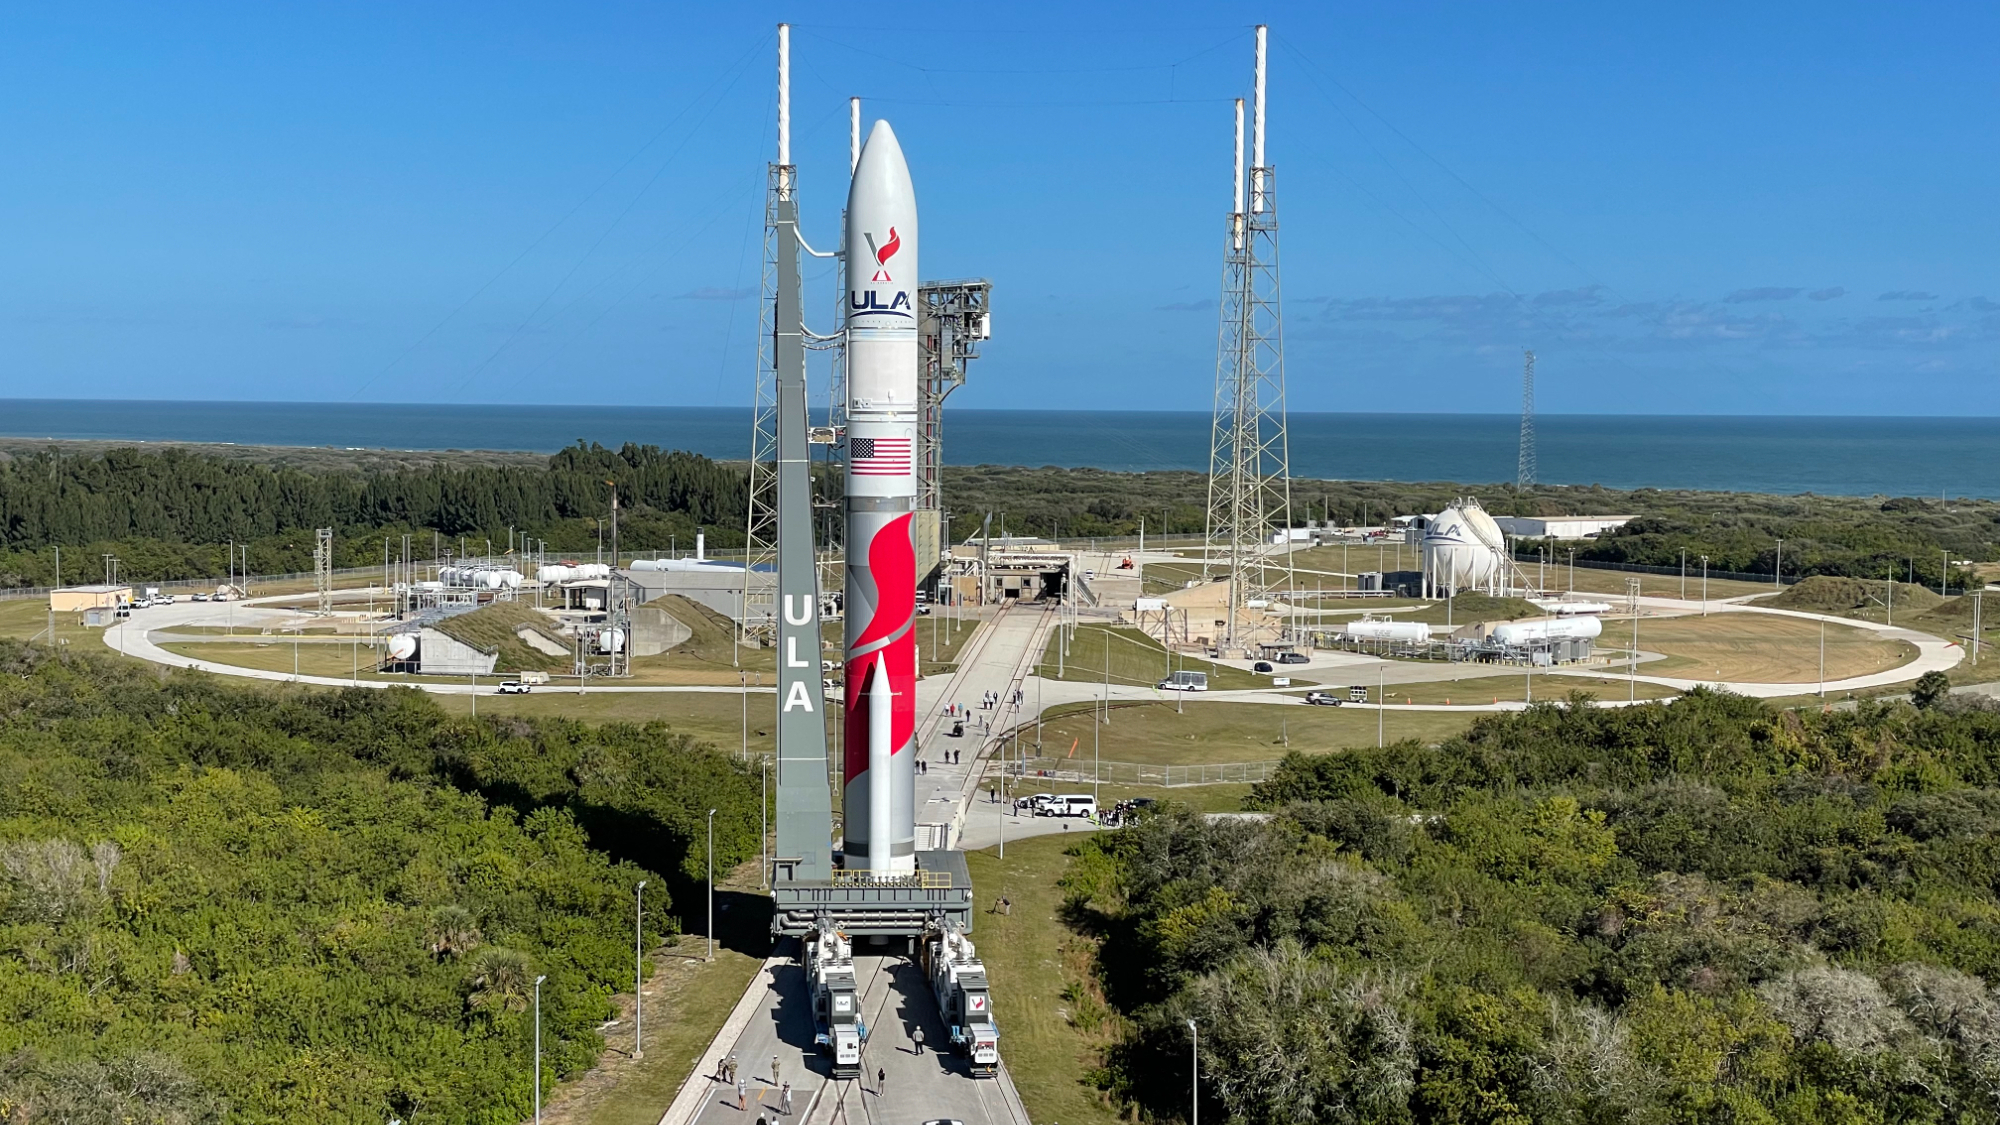 Rote und weiße Rakete steht auf der Startrampe mit dem Meer im Hintergrund.